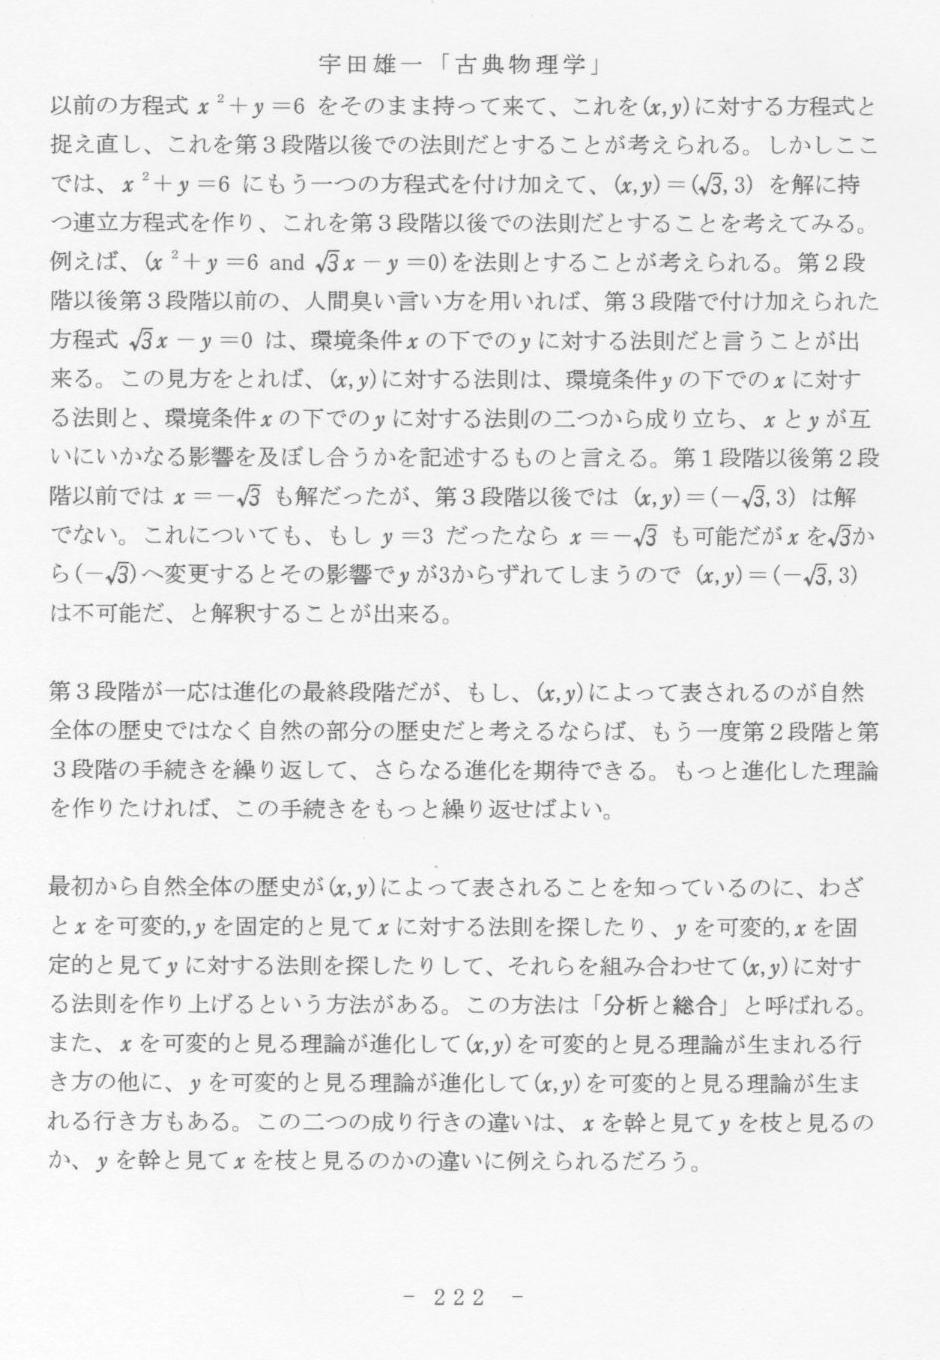 p222 宇田雄一「古典物理学」